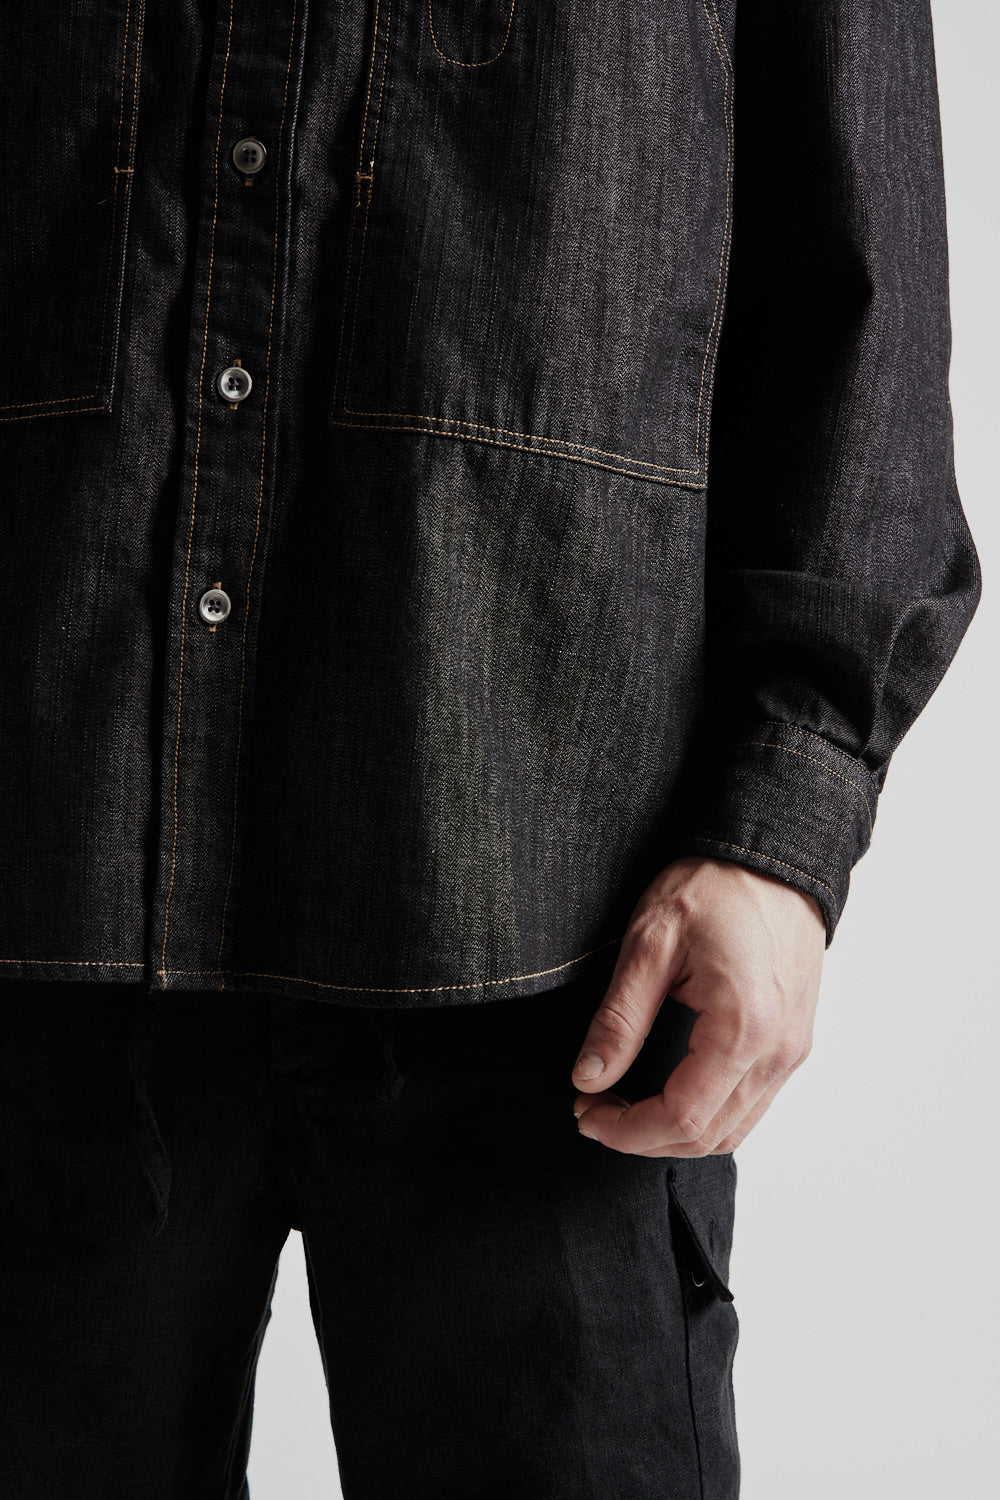 Frizmworks Denim Carpenter Pocket Work Shirt in Black